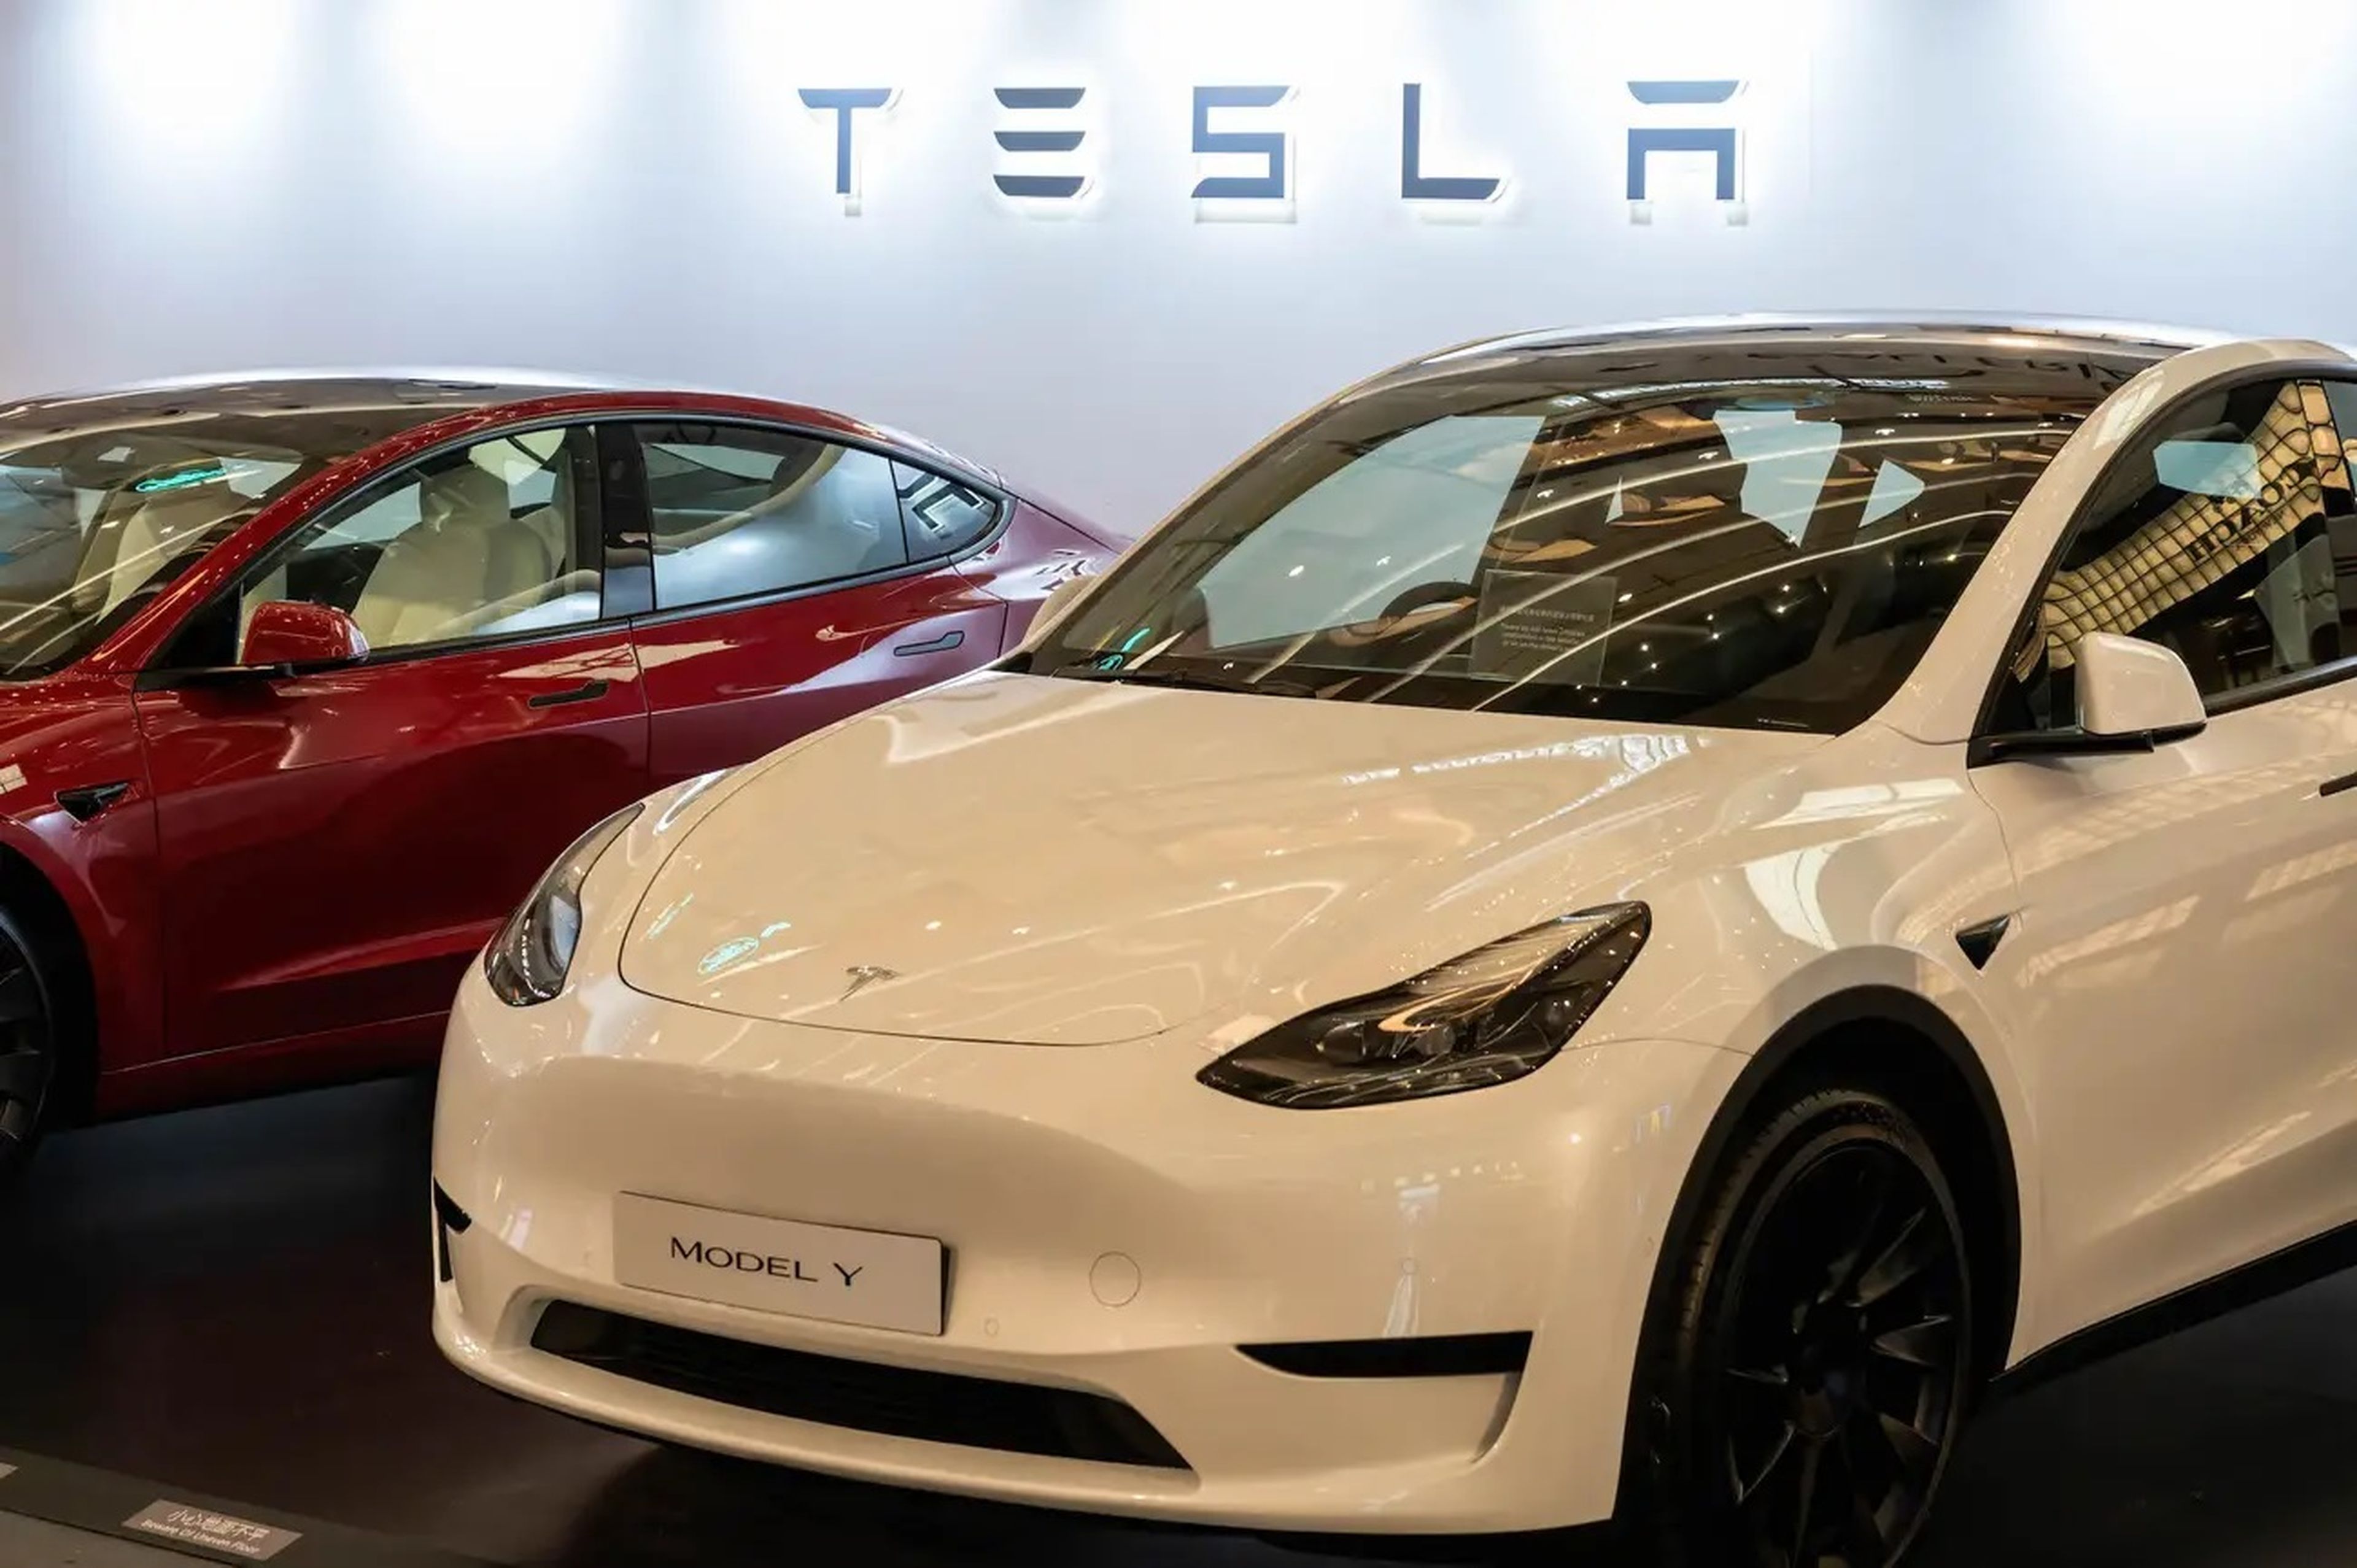 Para suprimir las quejas, Tesla creó un equipo secreto en Nevada para cancelar las citas, según Reuters.